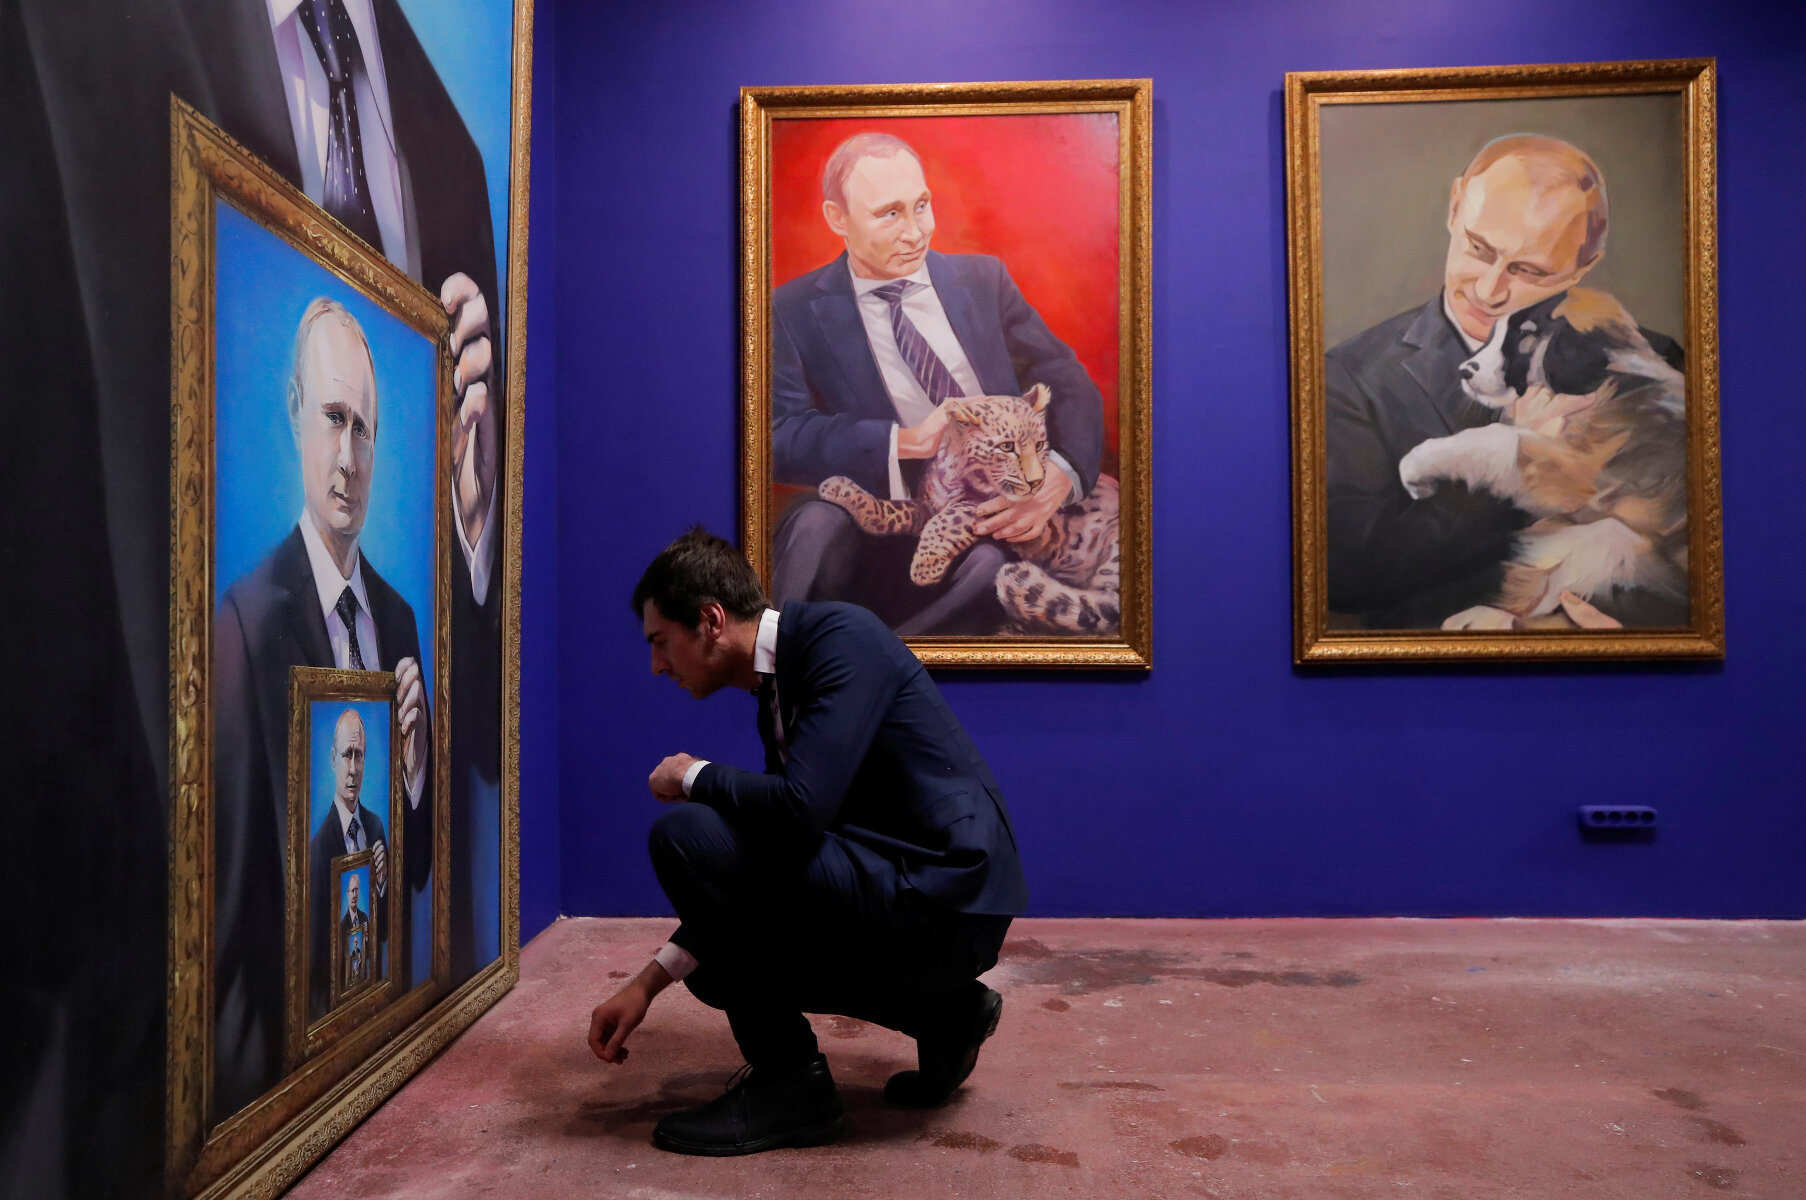 <p>&laquo;Как только Путин объявил об участии&nbsp;в президентских выборах 2018 года, в Москве открылась выставка SUPERPUTIN&raquo;,&nbsp;&mdash; <a href="https://www.huffingtonpost.com/entry/superputin-art-exhibition-moscow_us_5a2d1858e4b073789f6a7699" target="_blank">пишет</a> Huffington Post.</p>